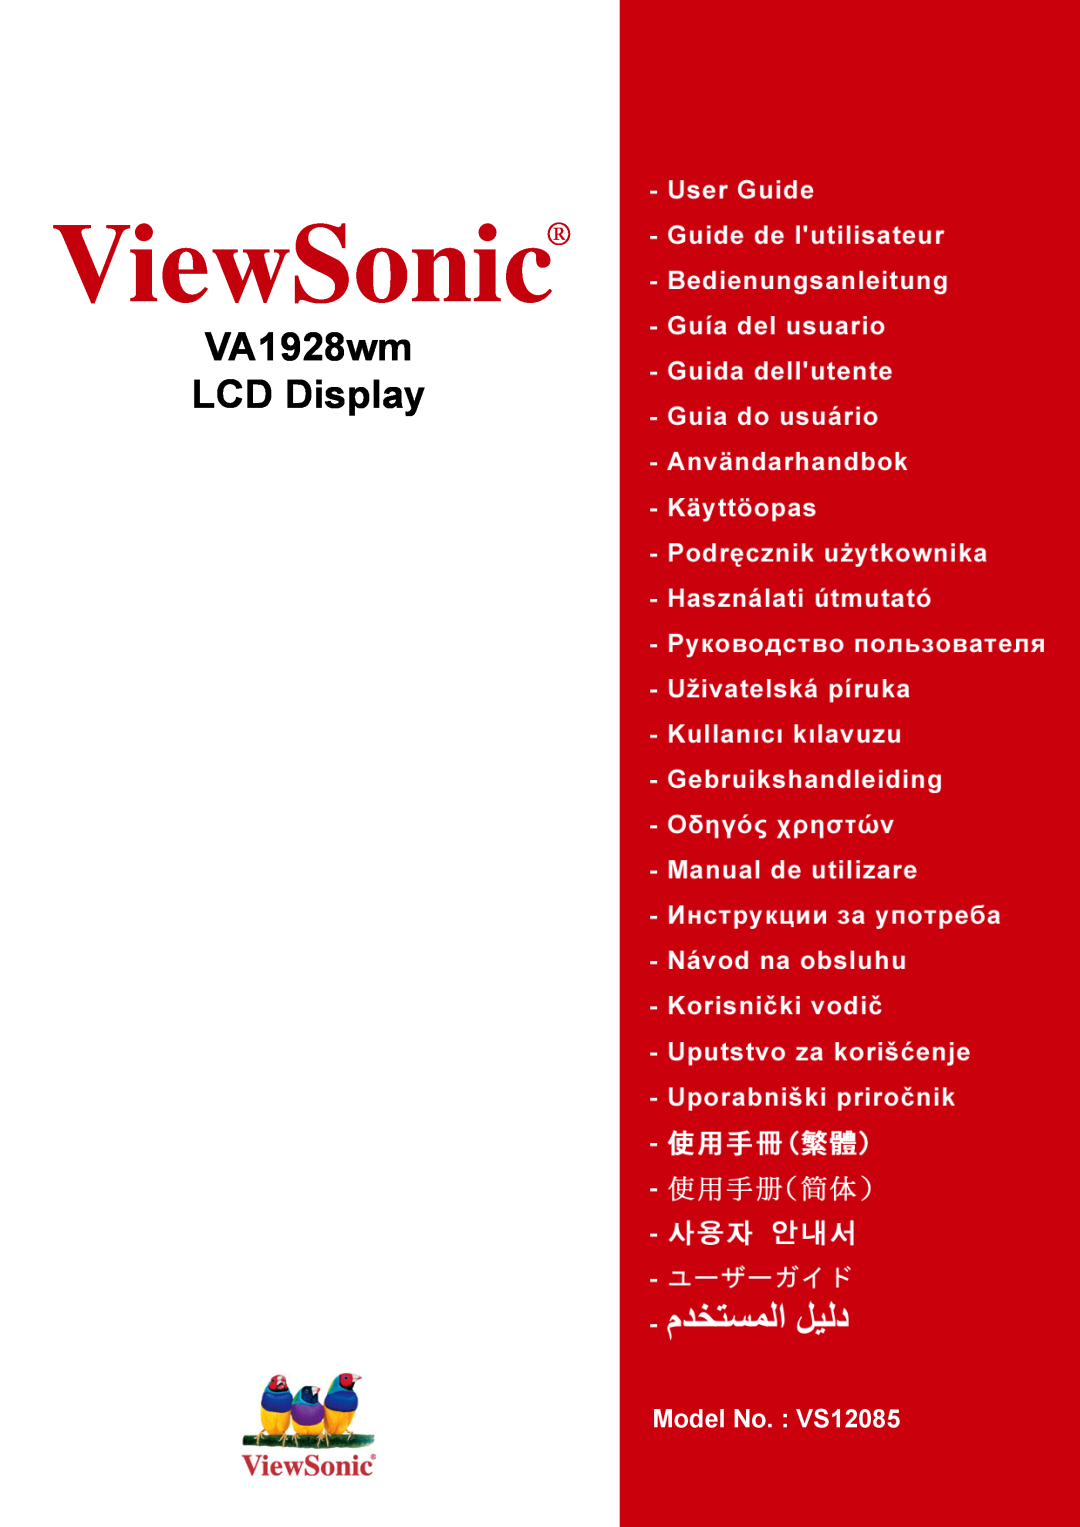 ViewSonic VA1928WM manual ViewSonic, VA1928wm LCD Display, Model No. VS12085 